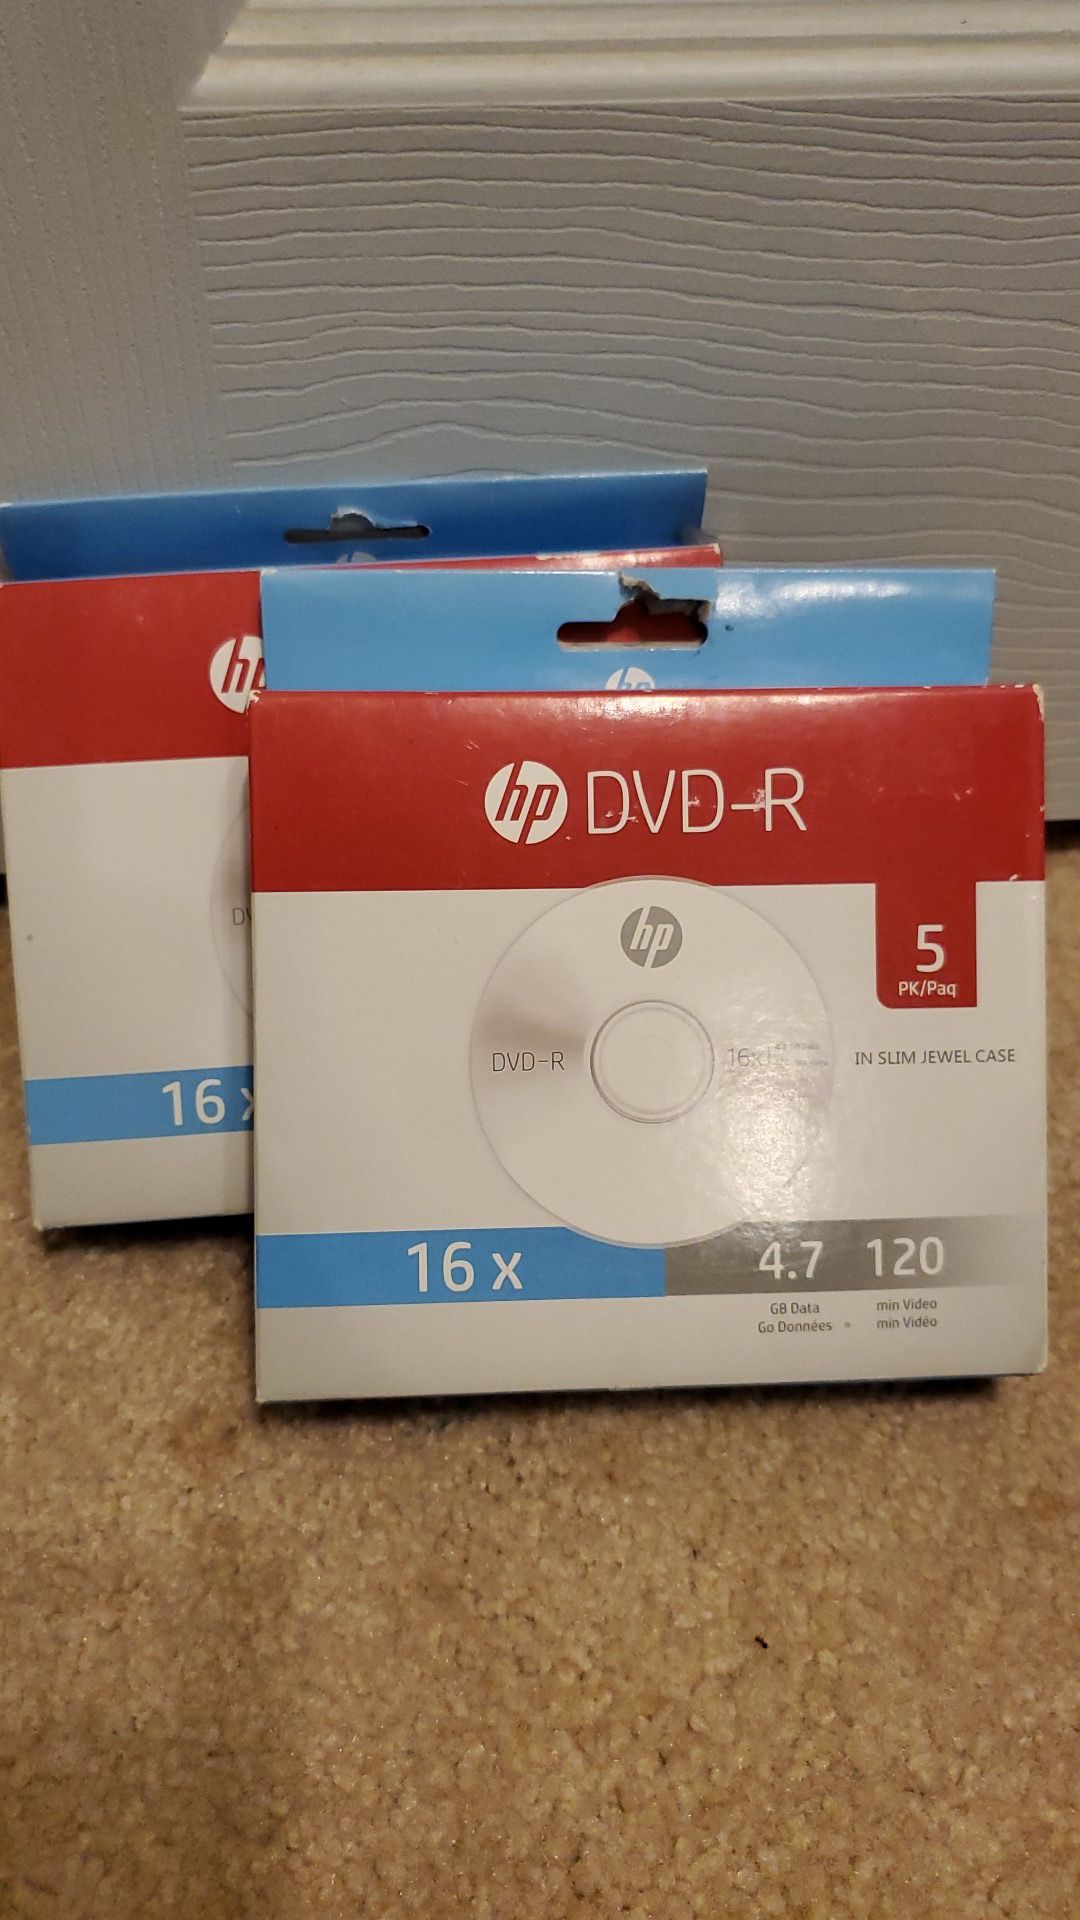 HP DVD-R 5pk